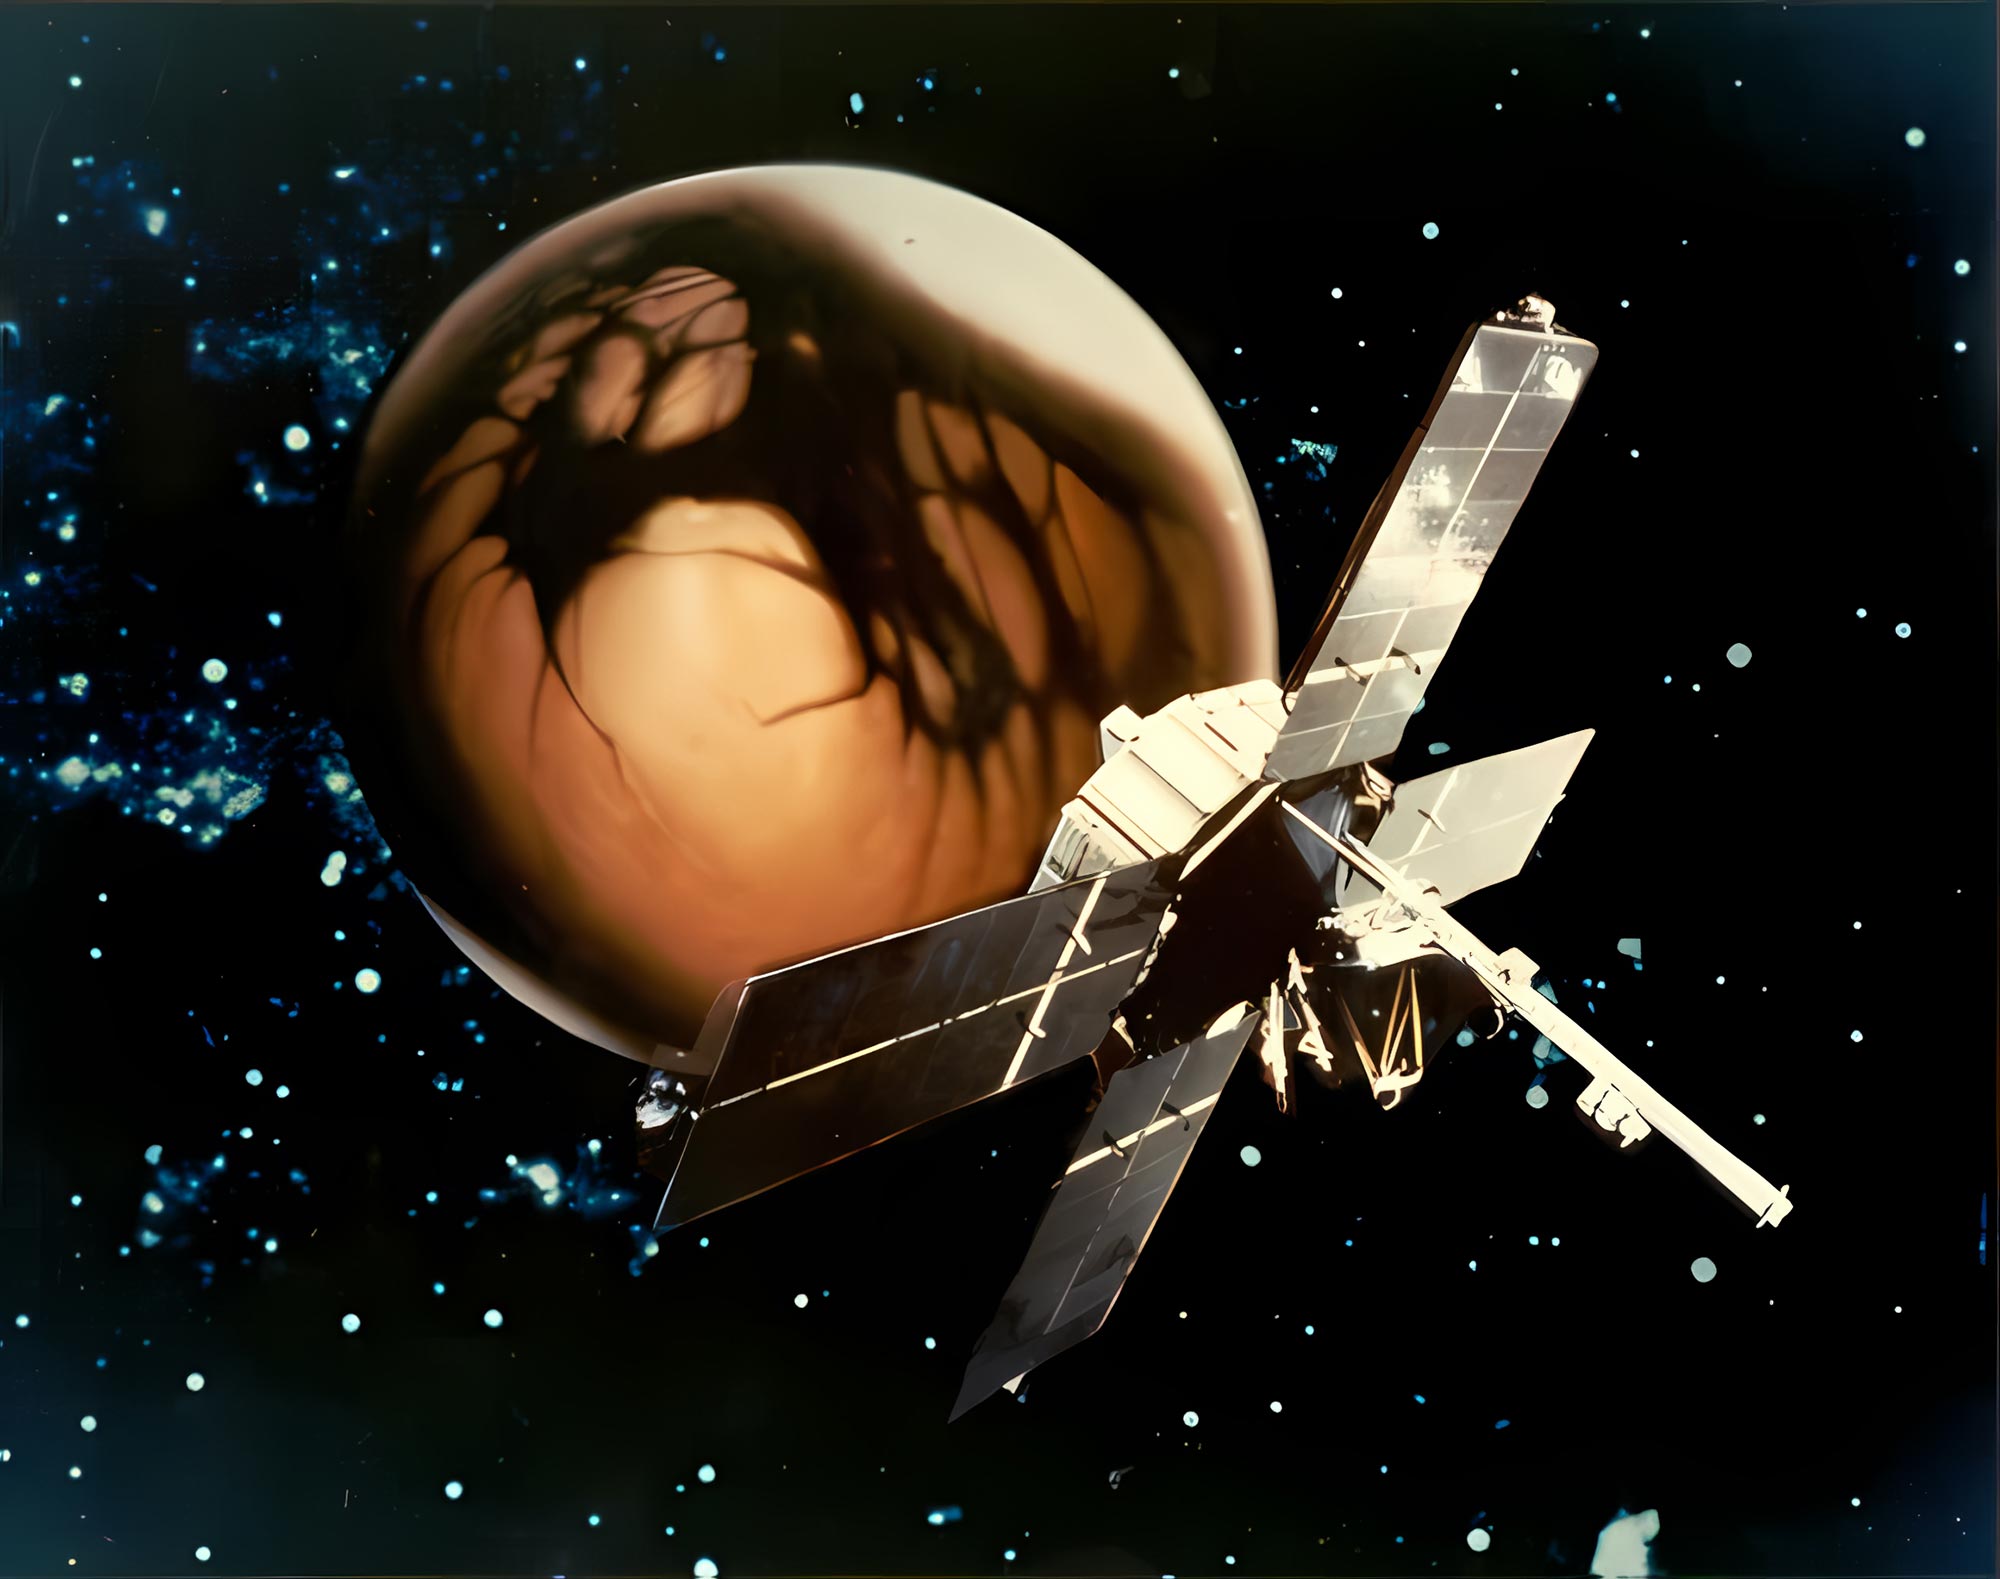 Concepto artístico del Mariner 4 en Marte